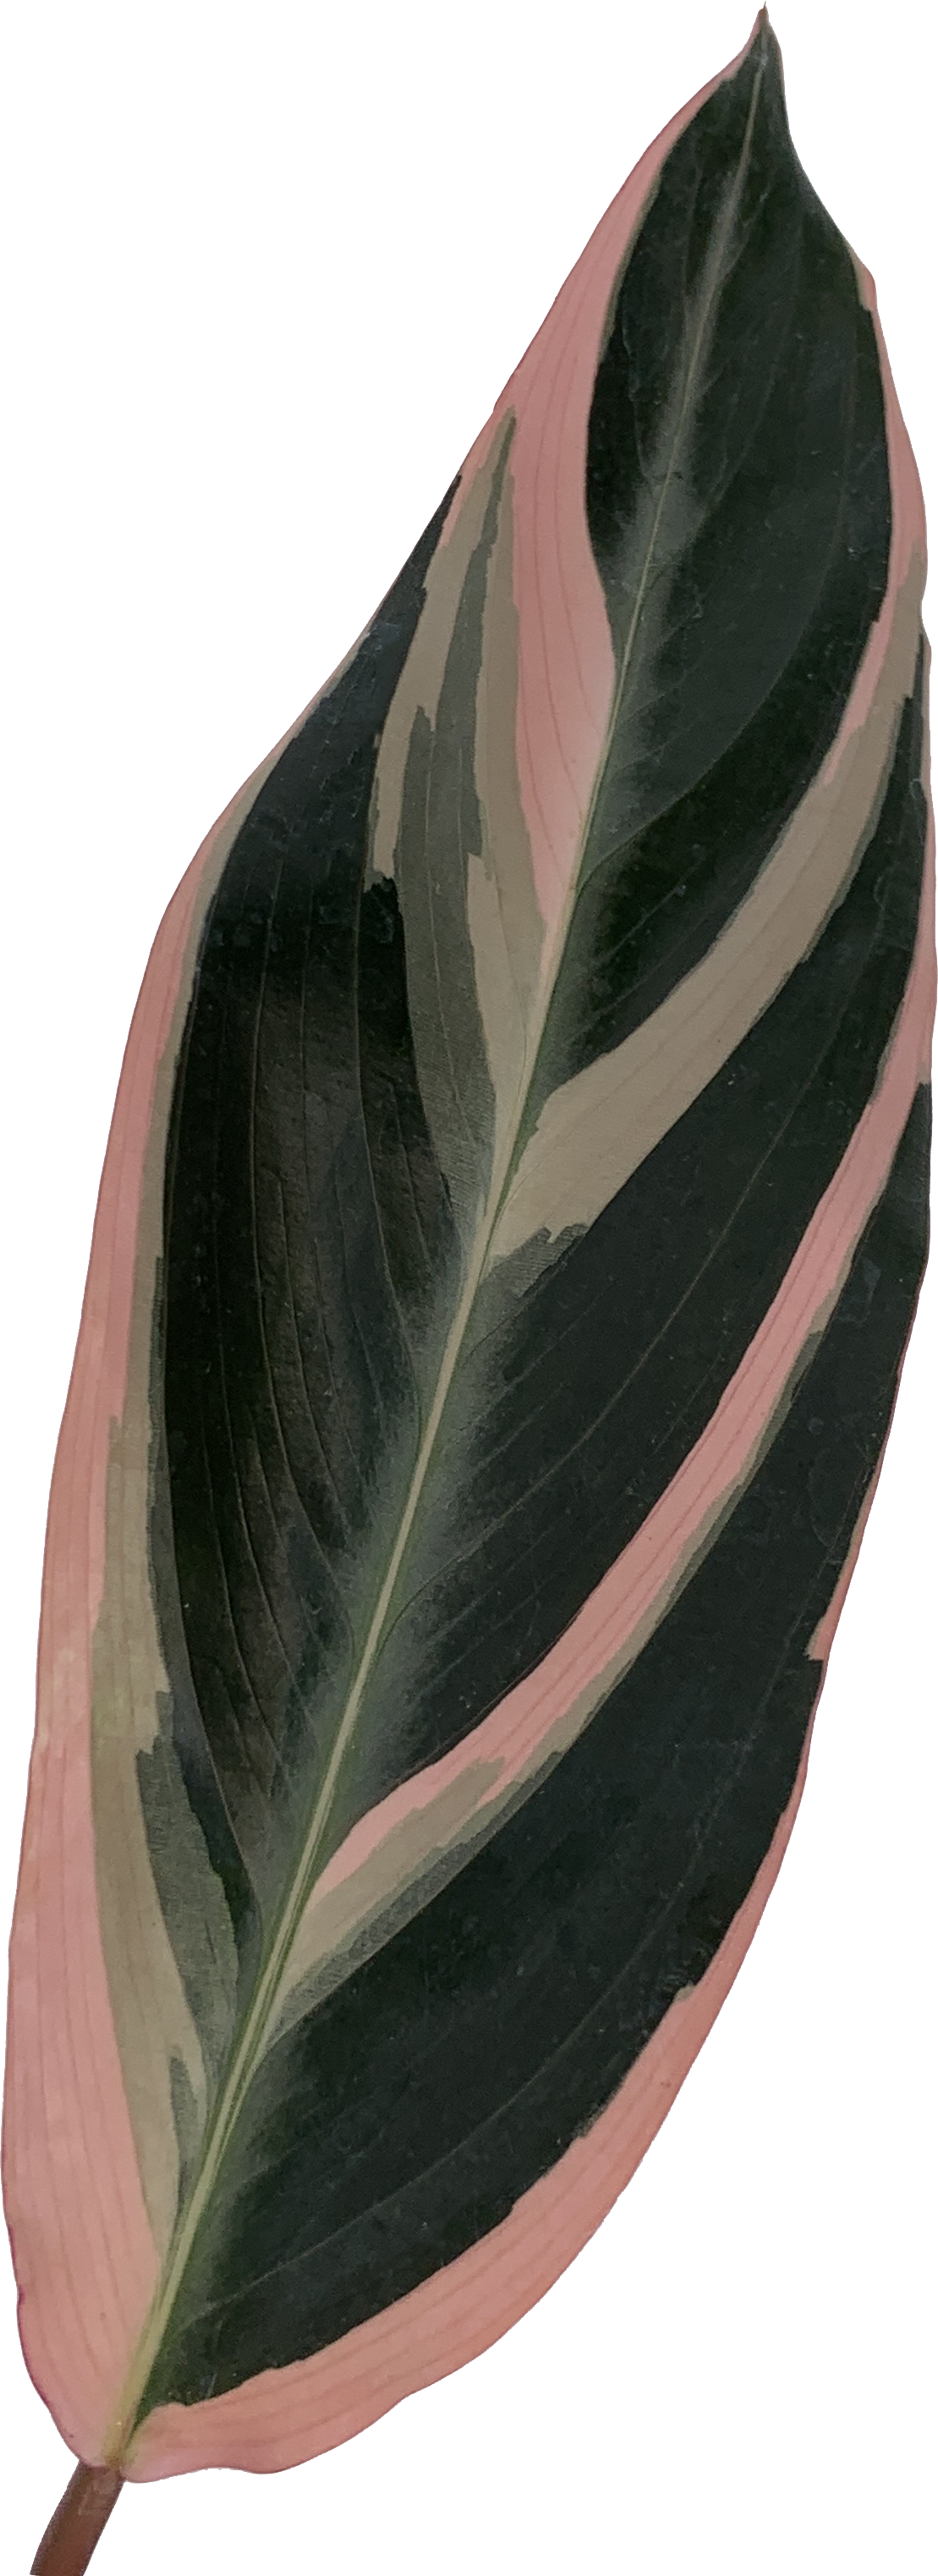 Stromanthe Triostar, Stromanthe Sanguinea